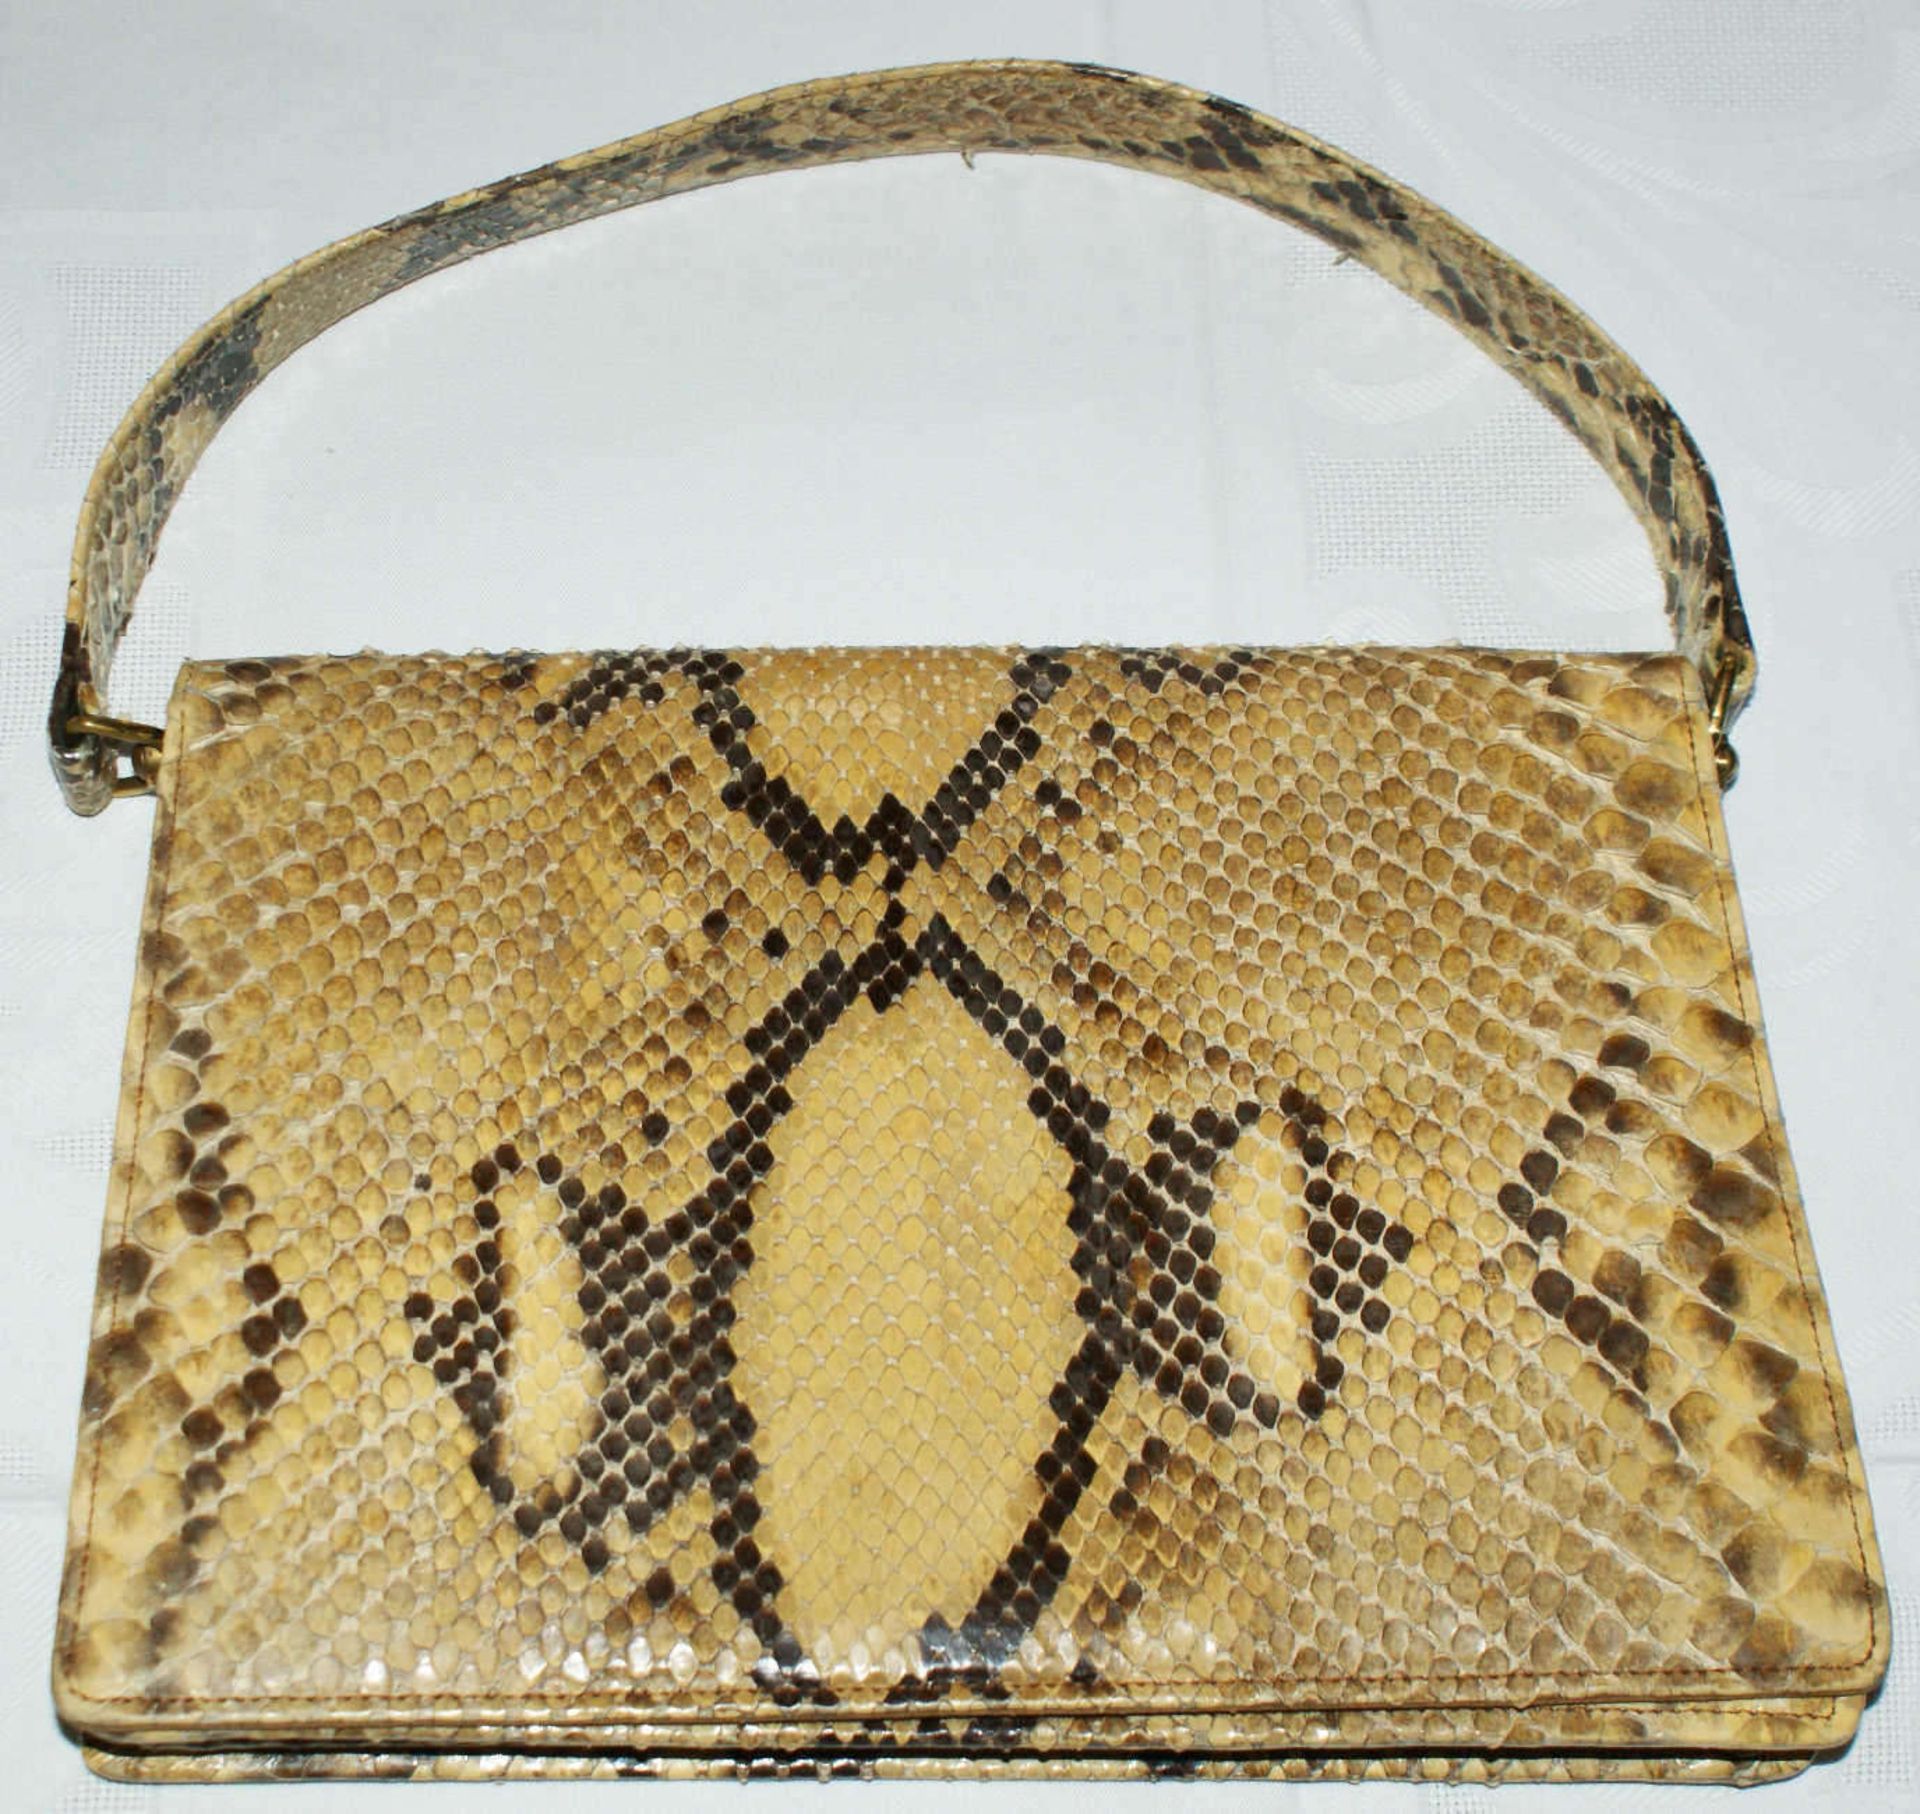 Handtasche aus Reptilienleder mit Gebrauchsspuren.